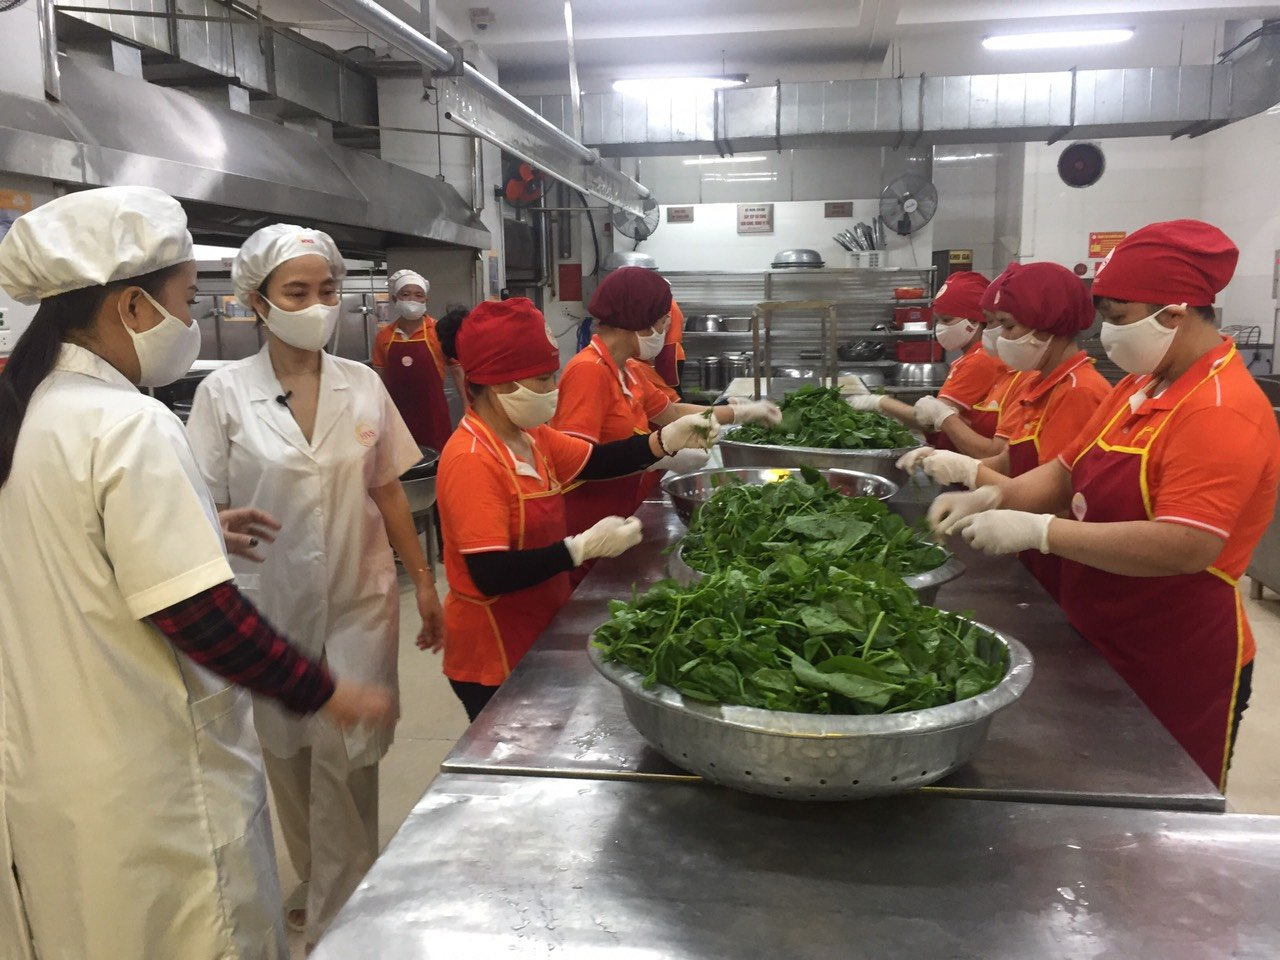  Đồng chí Vũ Lan Sinh - Chủ tịch Công ty Hương Việt Sinh giới thiệu với Đoàn Đài TH Hà Nội về quy trình nhặt rau, rửa rau và khâu sàng giá.  